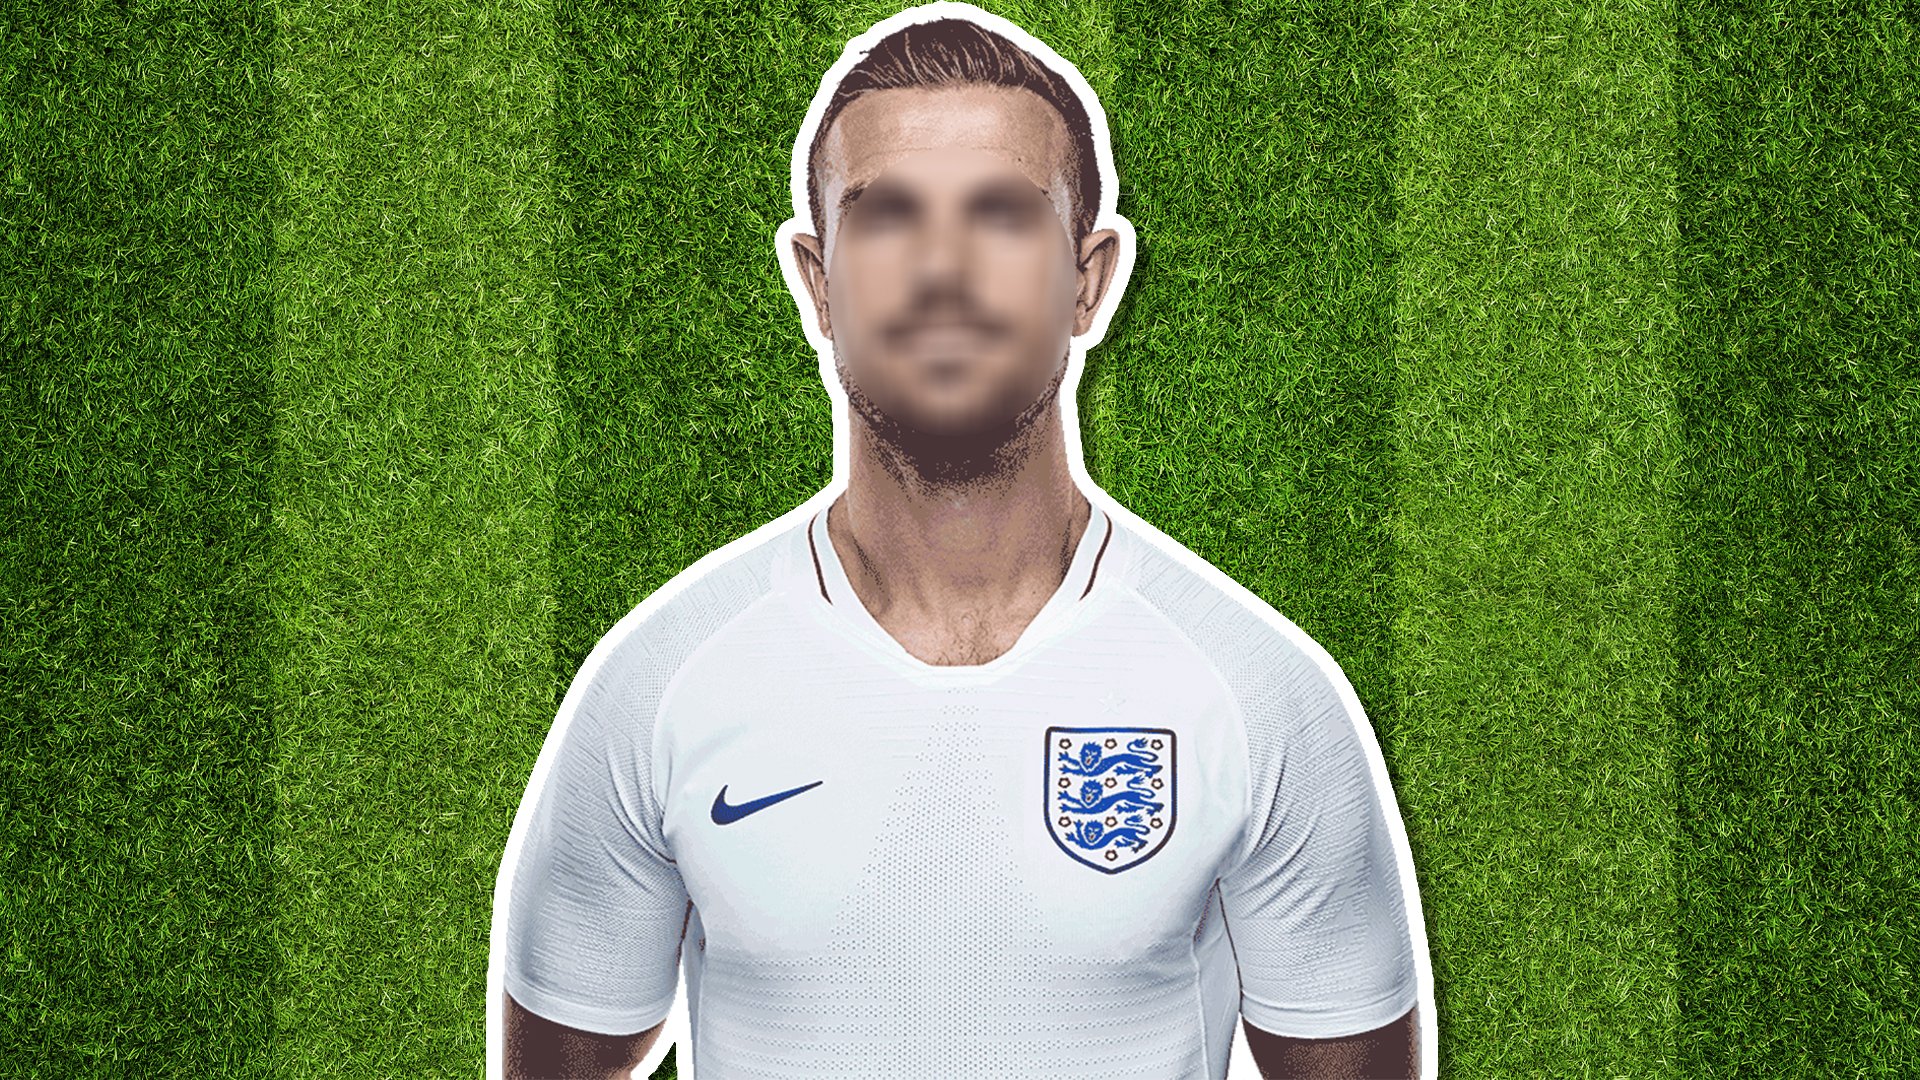 England player